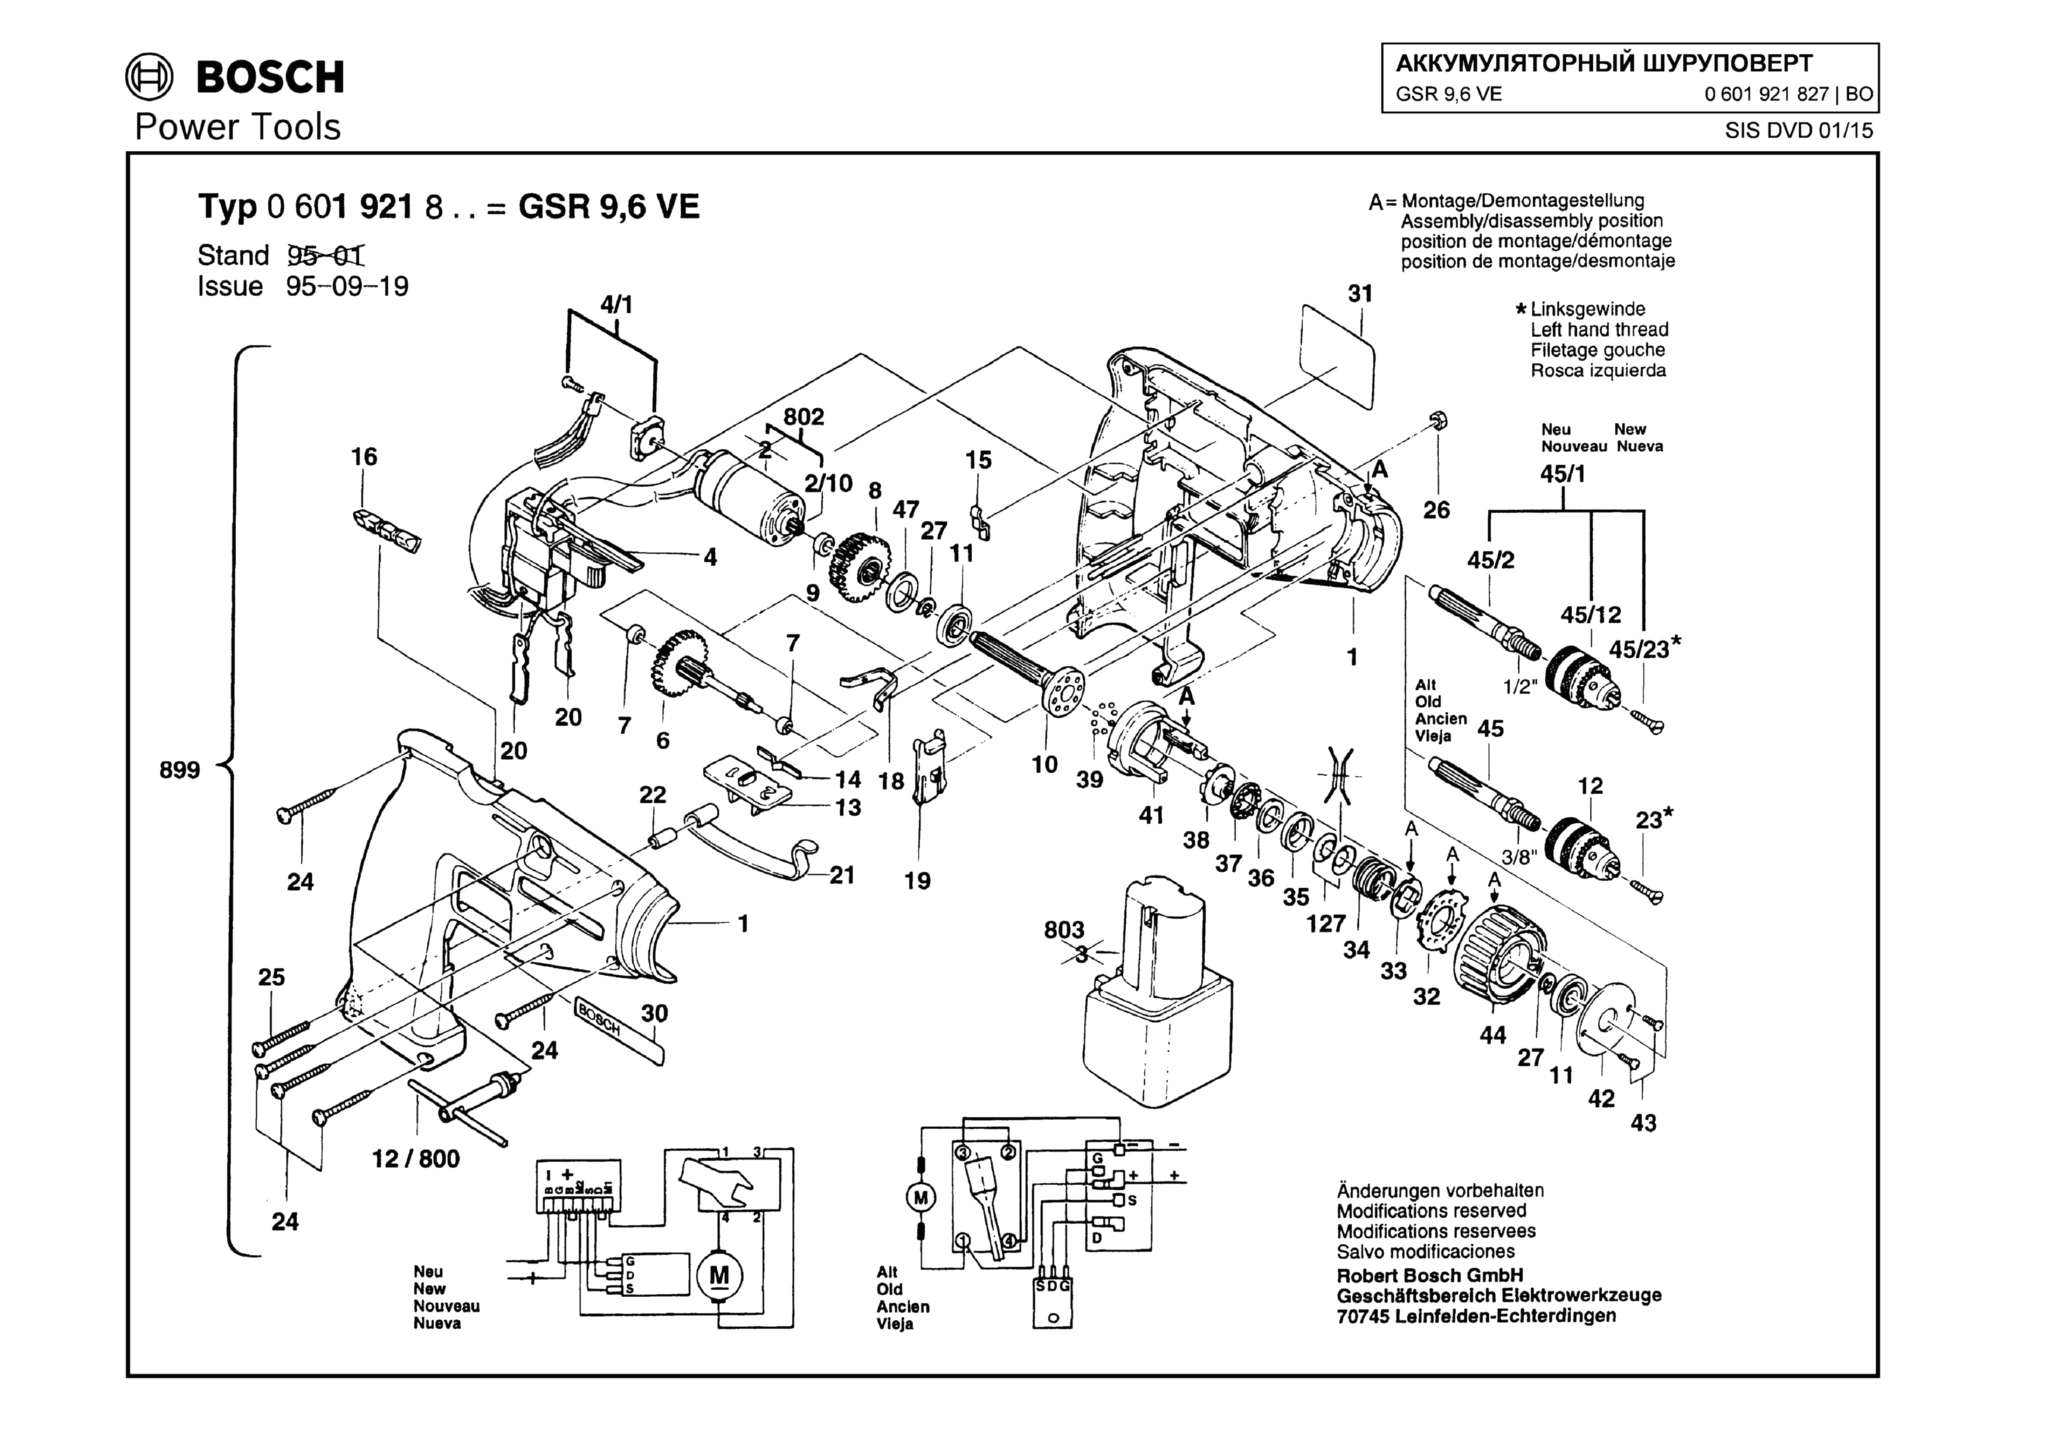 Запчасти, схема и деталировка Bosch GSR 9,6 VE (ТИП 0601921827)